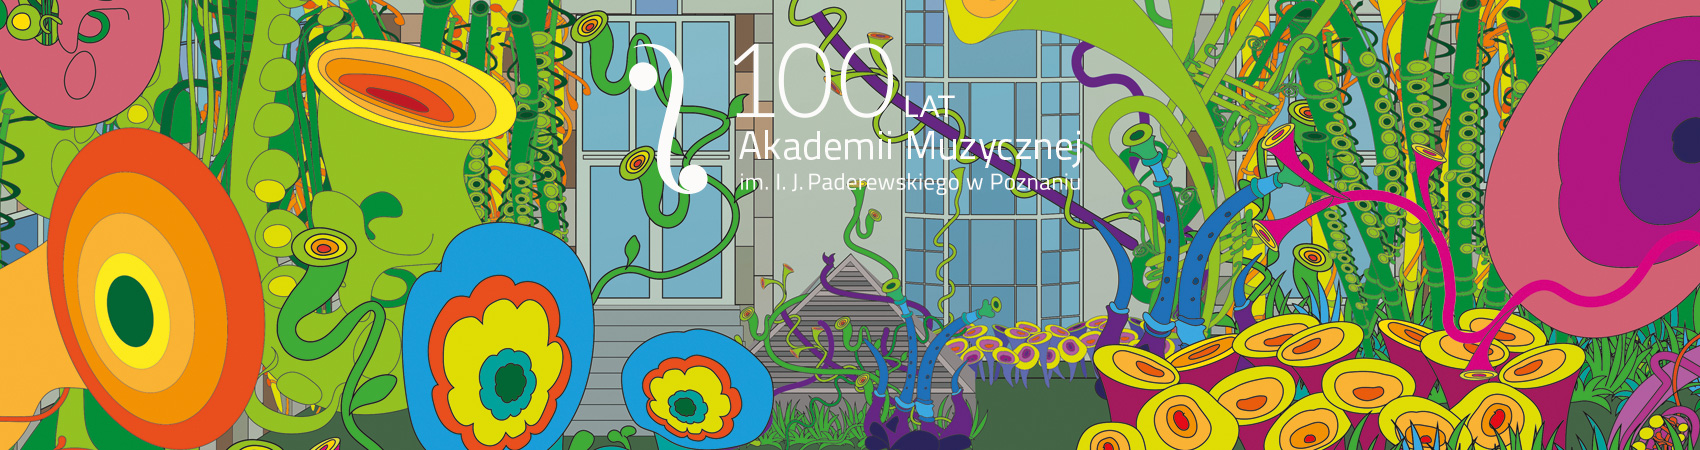 100 lat Akademii Muzycznej w Poznaniu